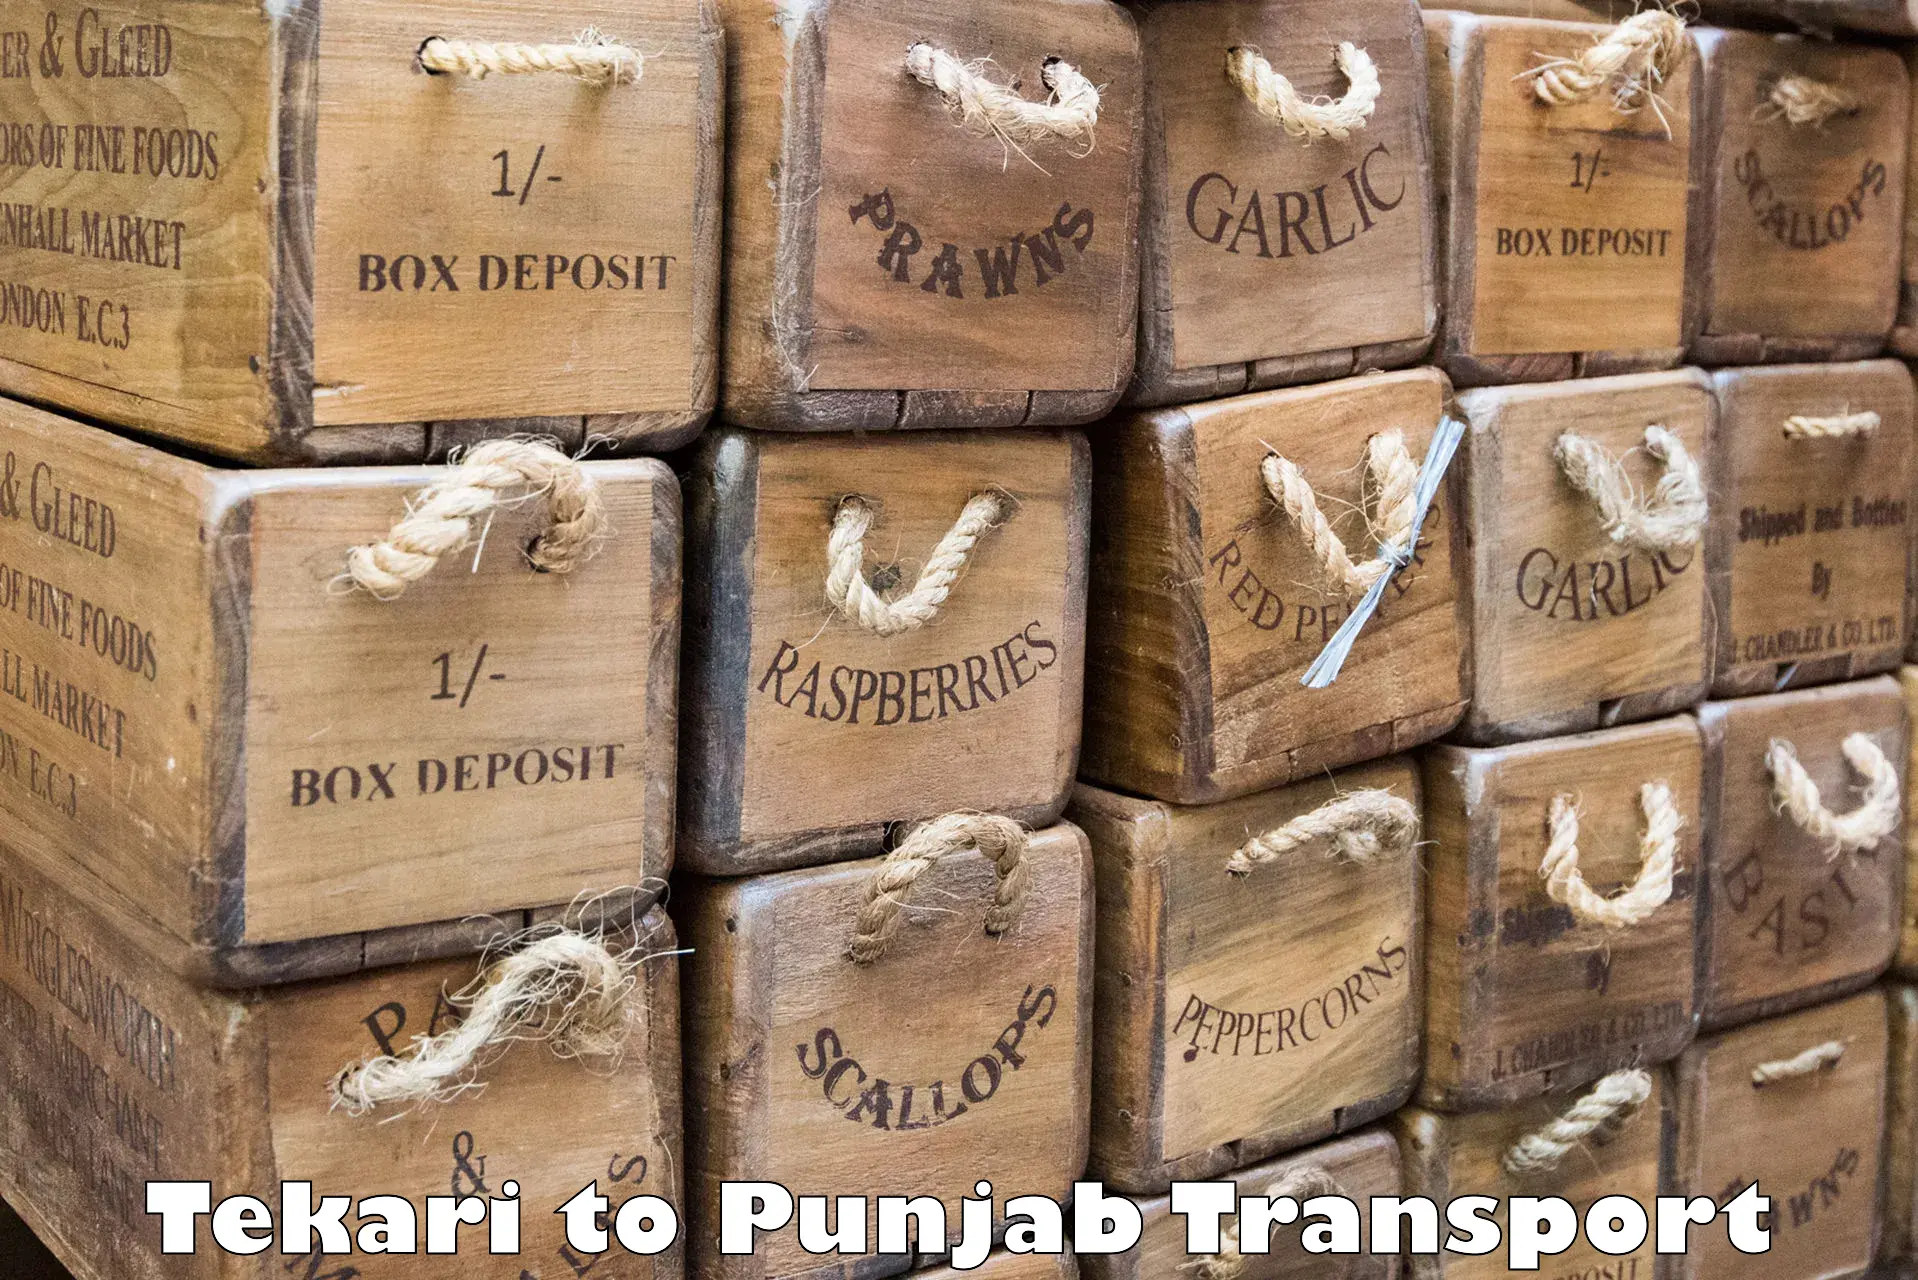 Furniture transport service Tekari to Punjab